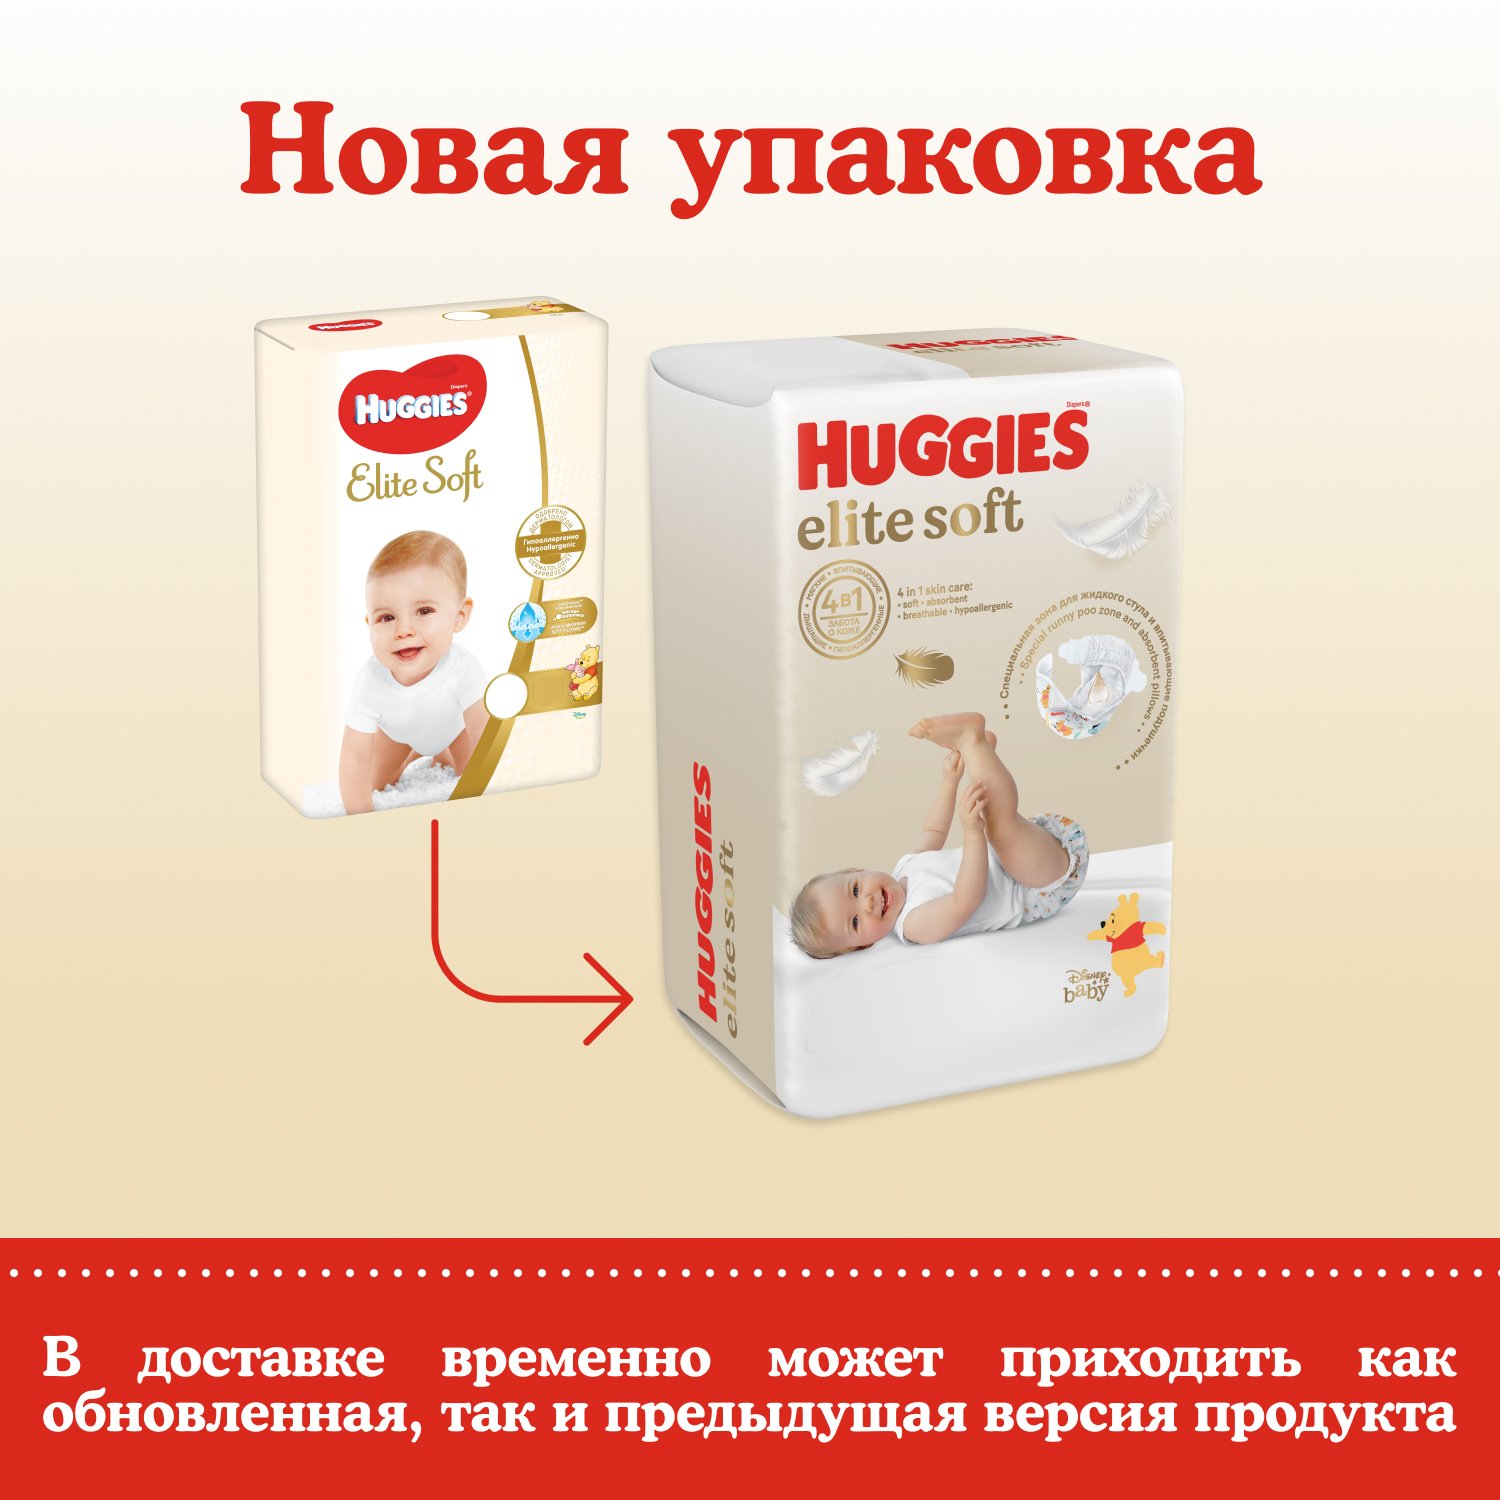 Подгузники Huggies Elite Soft для новорожденных 2 4-6кг 100шт - фото 3